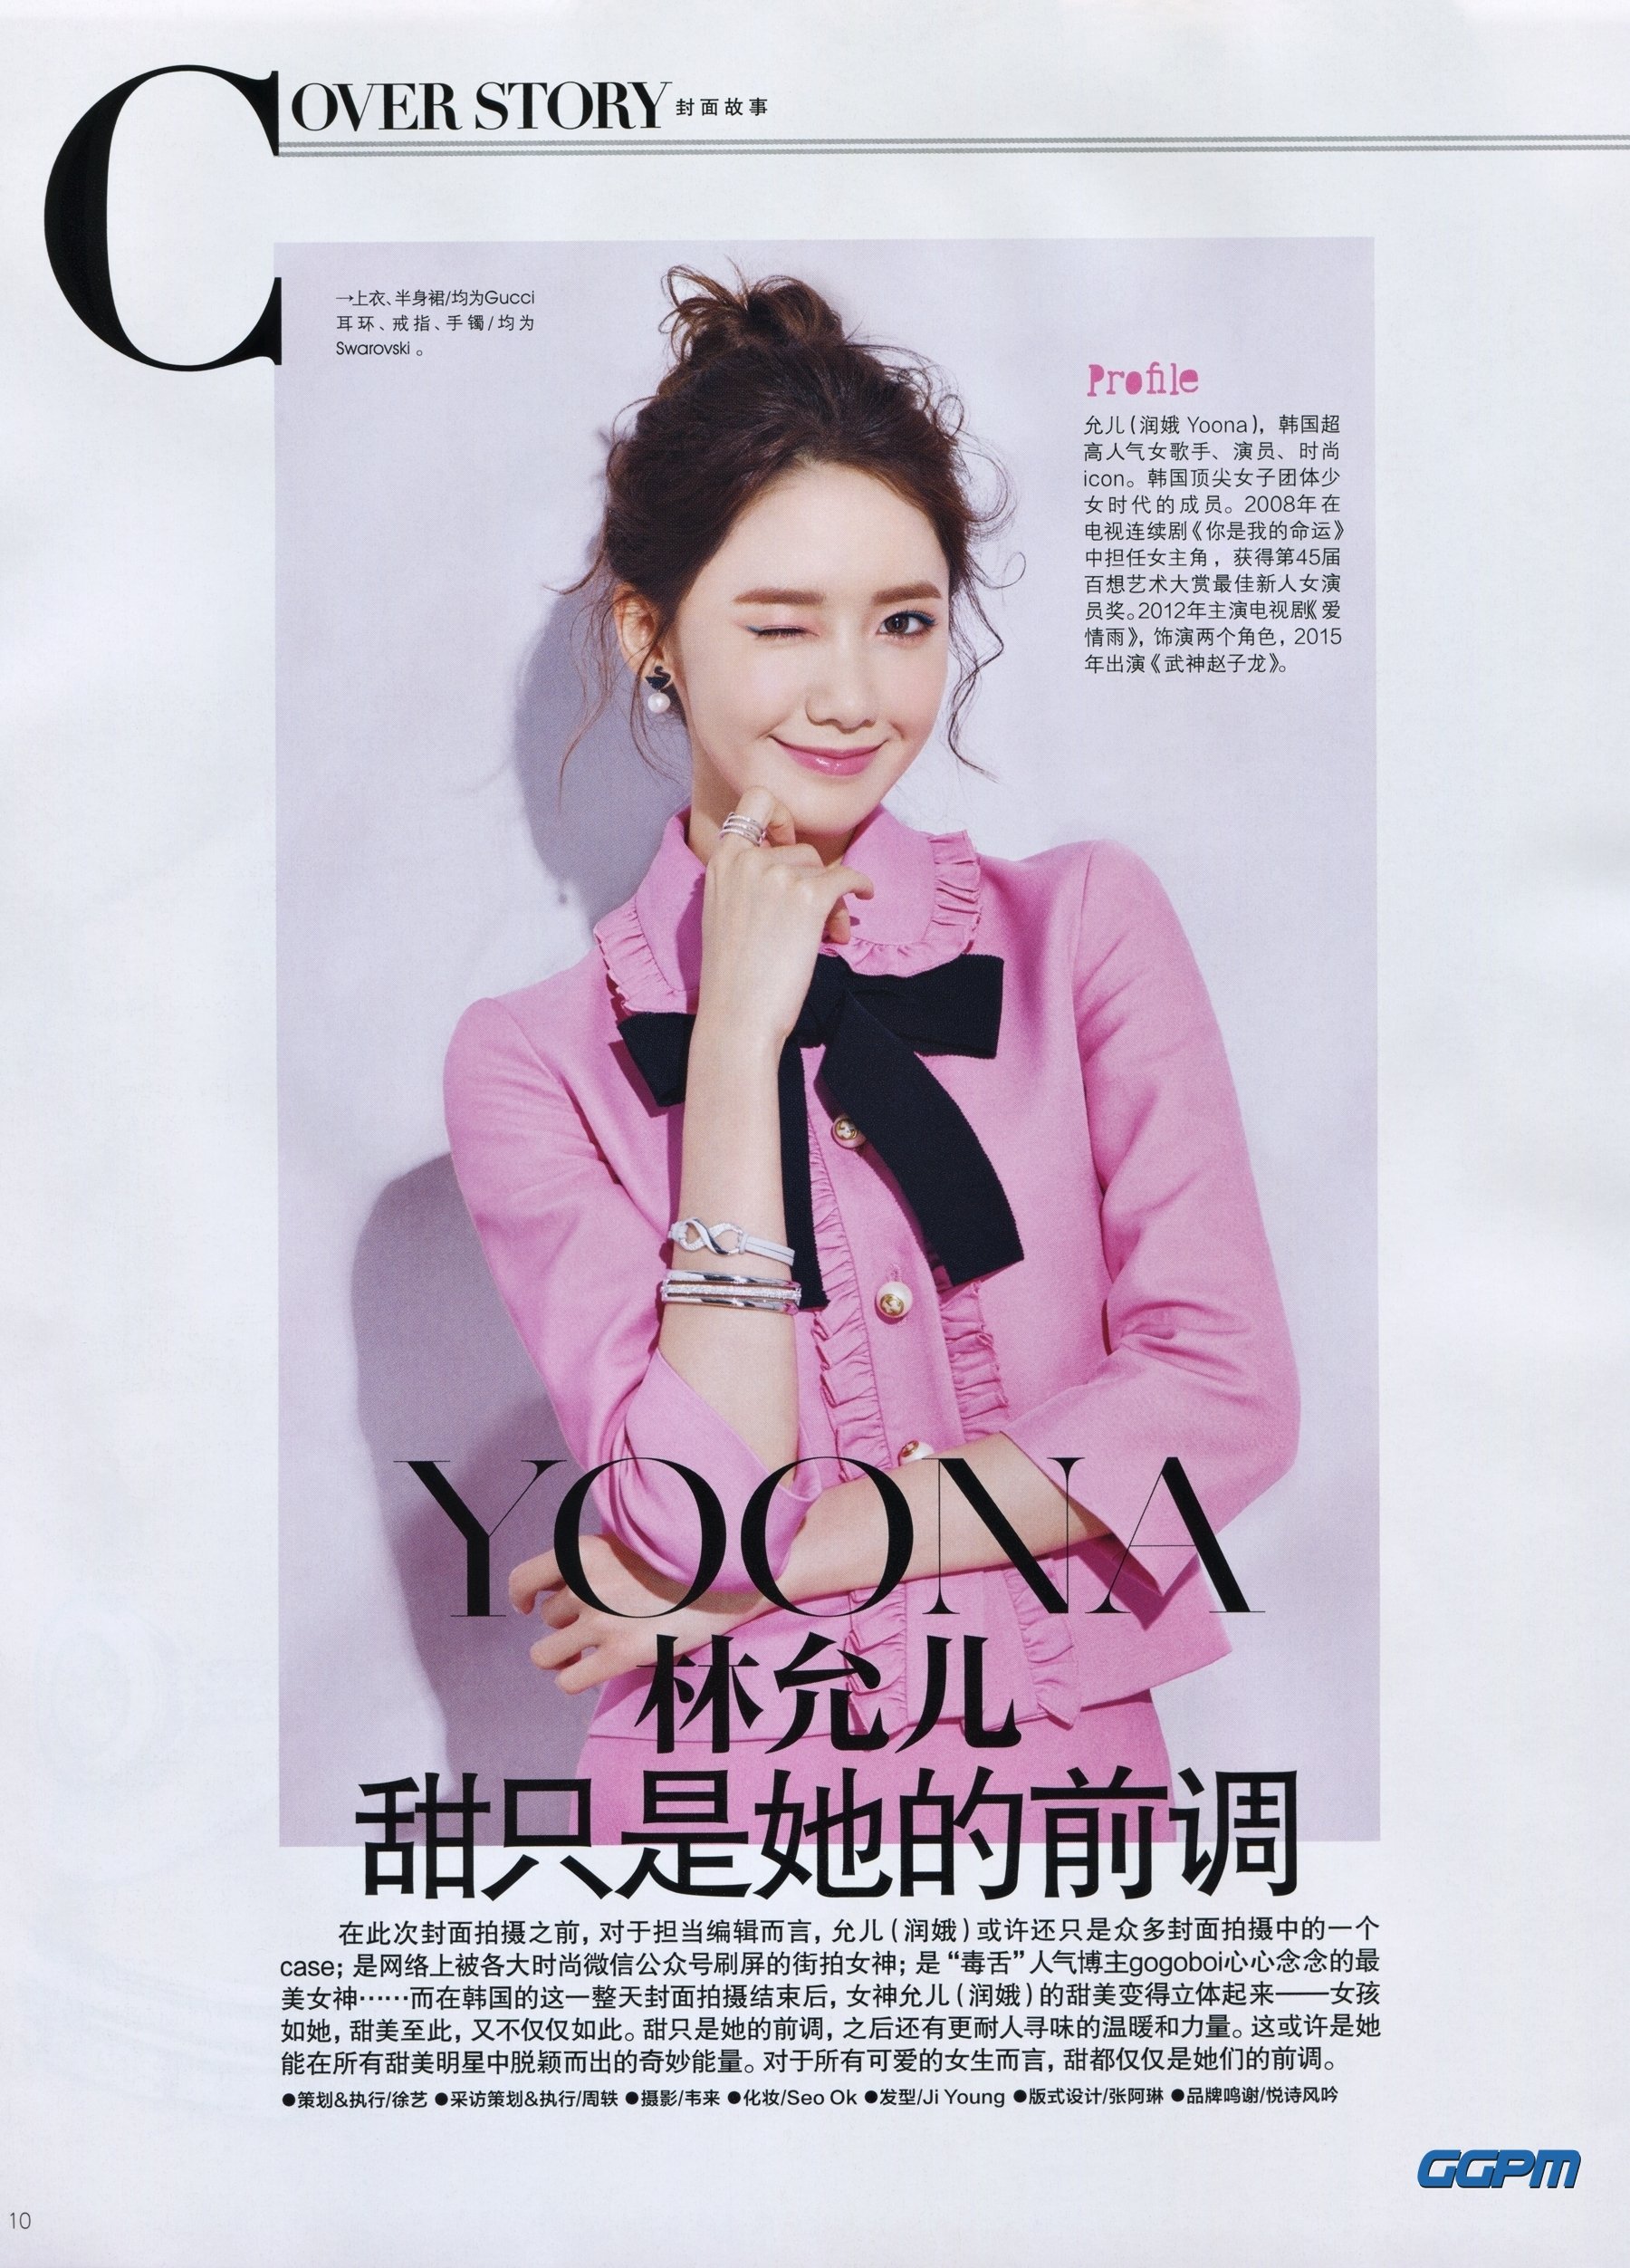 [PIC][17-02-2016]YoonA xuất hiện trên trang bìa ấn phẩm tháng 3 của tạp chí Trung Quốc - "Ray Li" XepUaIS_mF-3000x3000